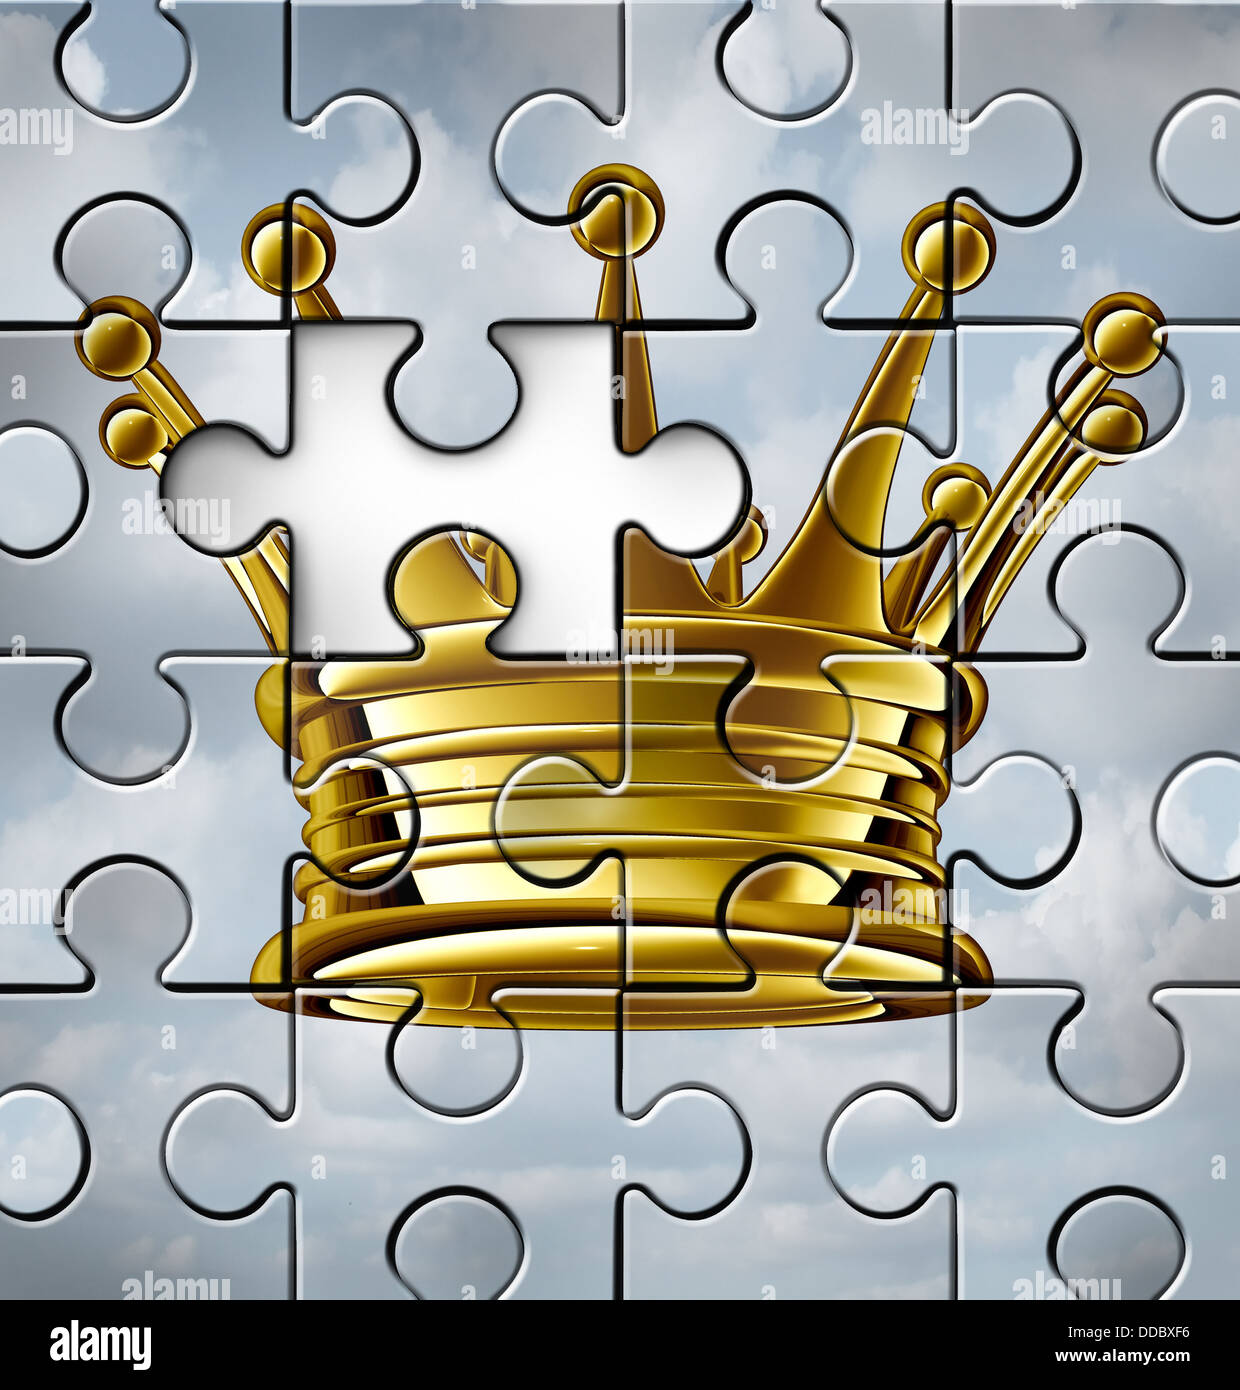 Führung Lücke Konzept oder Gebäude Unternehmensführung als eine Idee, eine gold-König krönen auf eine Jigsaw Puzzle-Textur mit einem Stück fehlt als Symbol der Führer Herausforderungen. Stockfoto